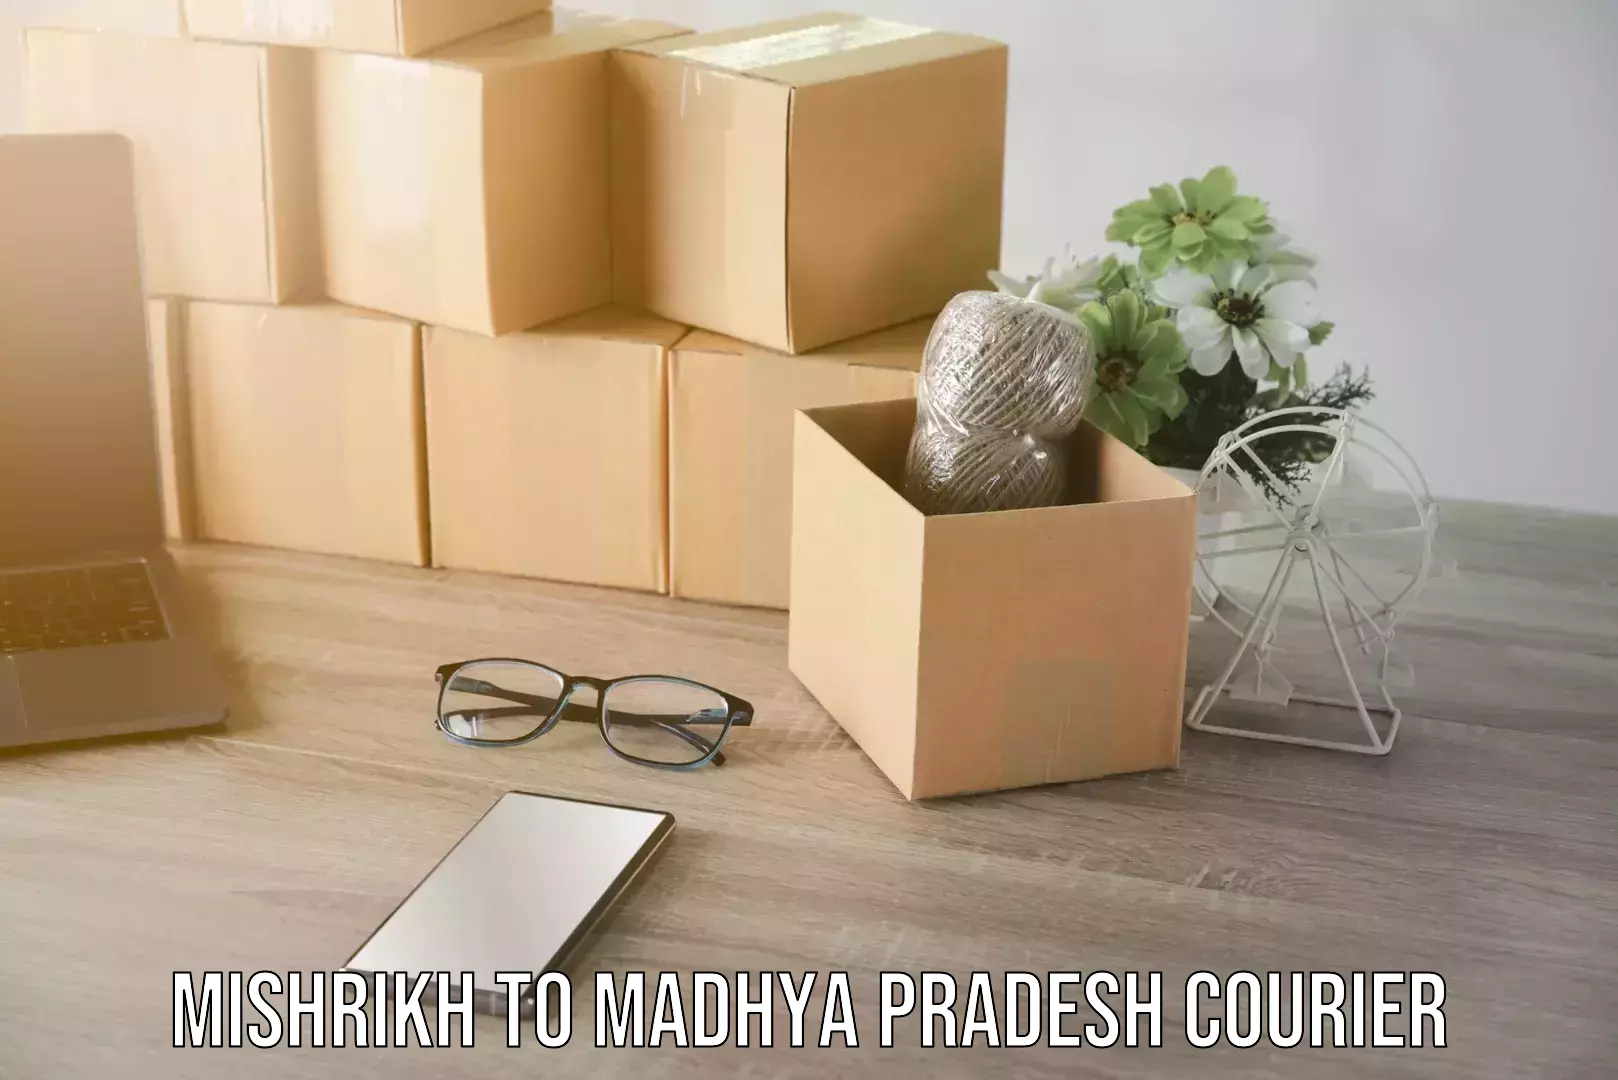 Furniture transport specialists Mishrikh to Madhya Pradesh